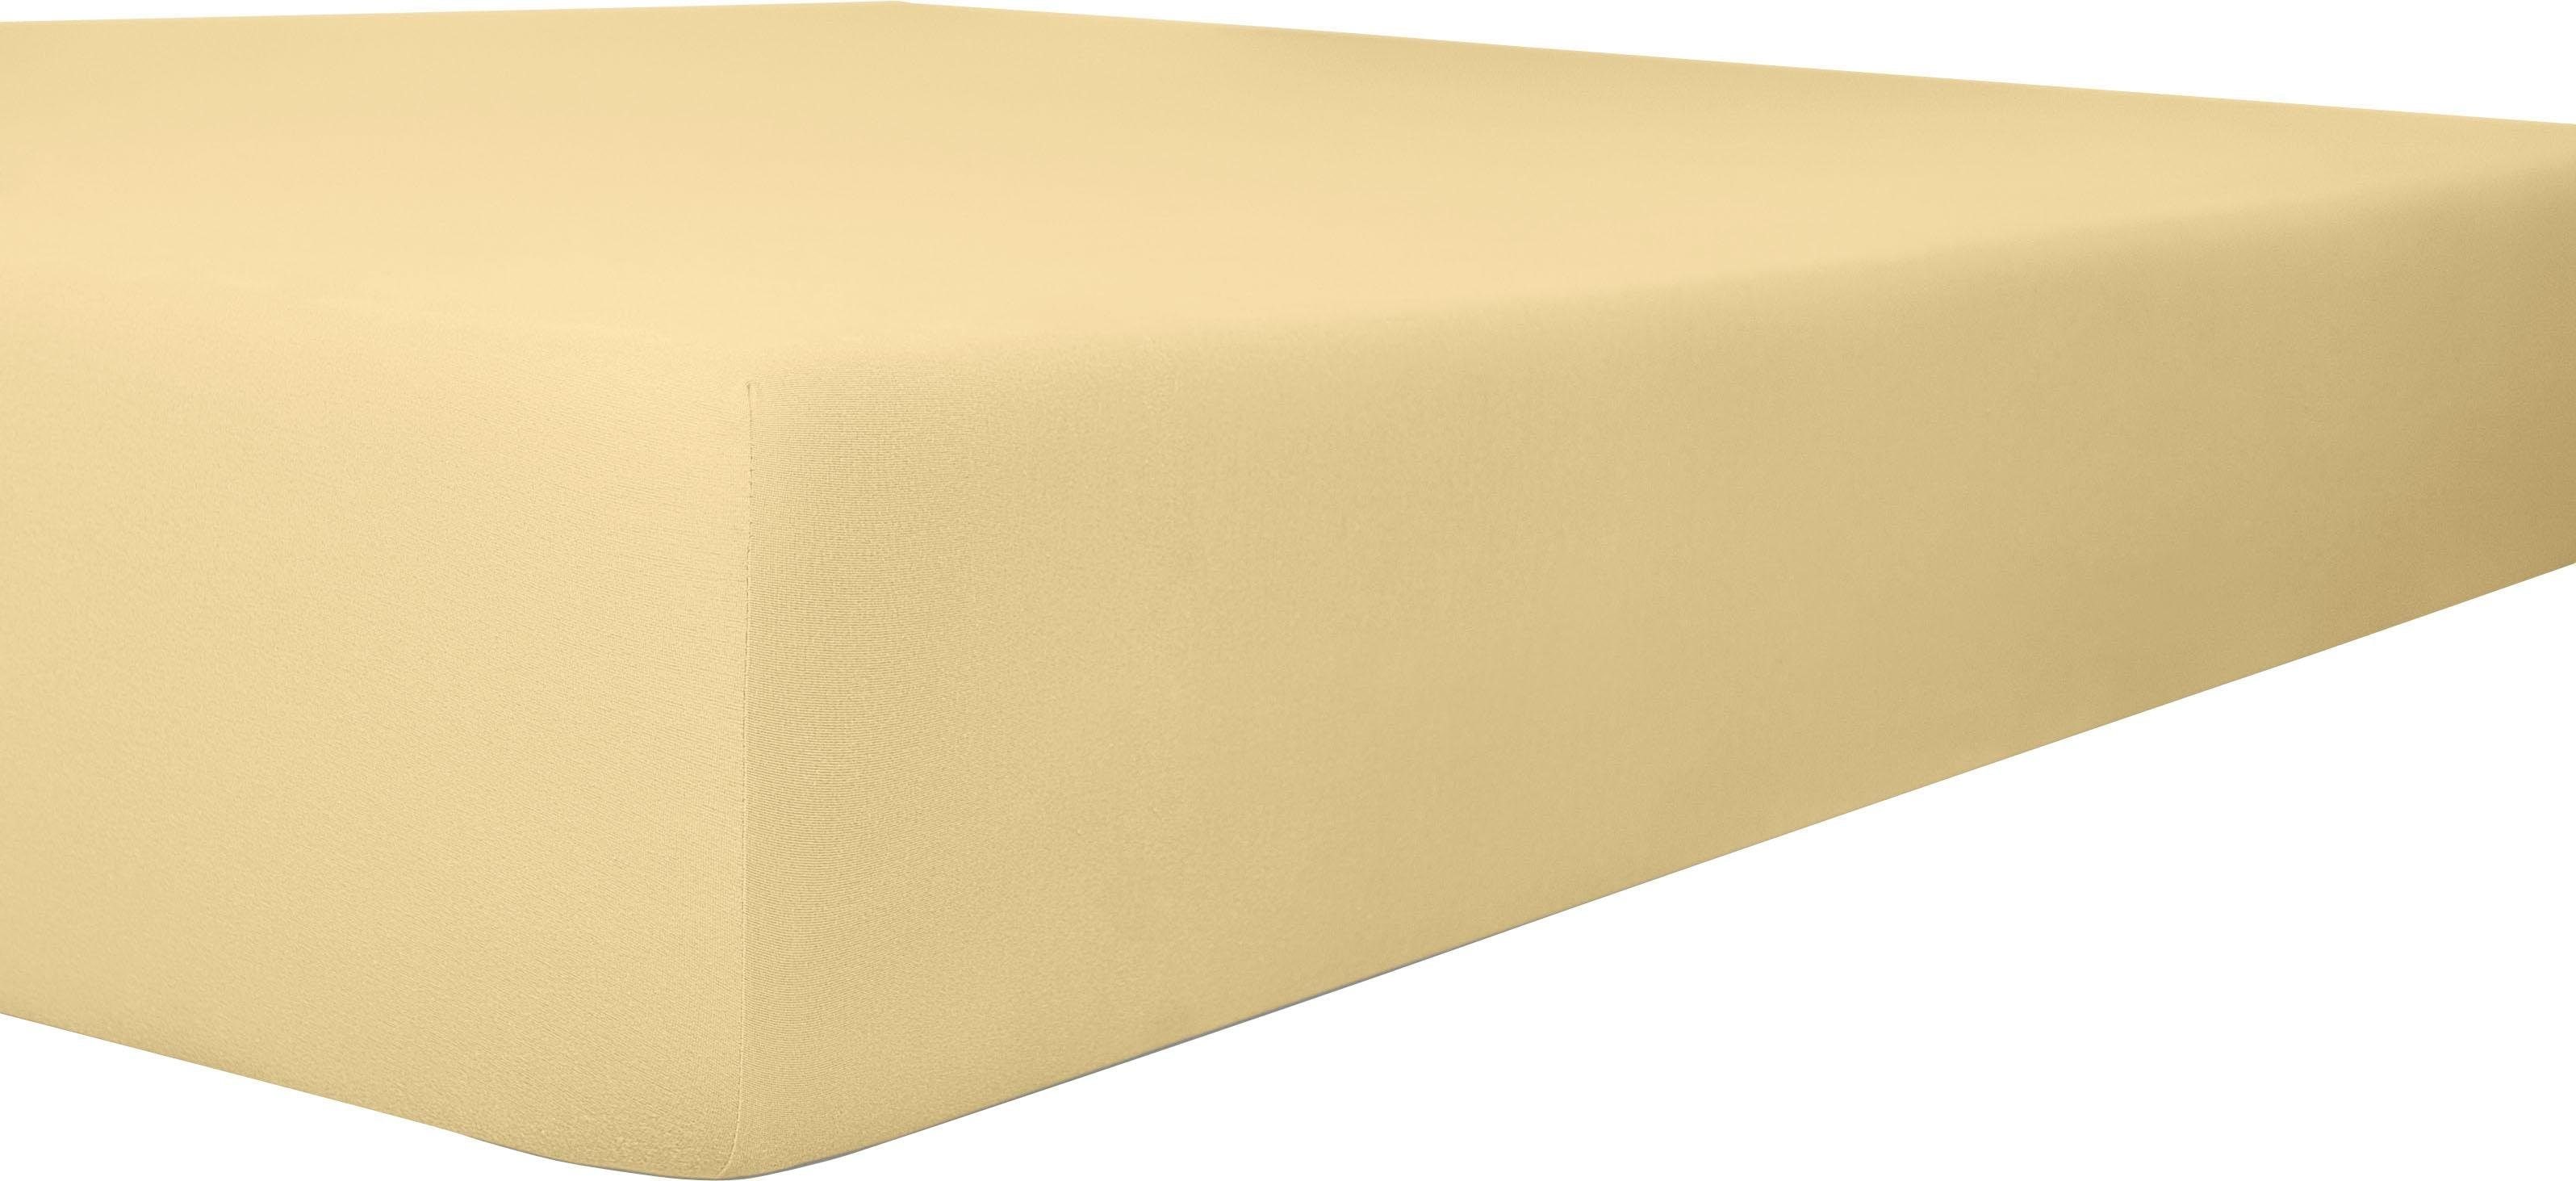 Kneer Exclusive-Stretch Q93 Spannbetttuch 40cm extra hoch, Farbe:53 - Kiesel;Größe:200x220-200x240 cm